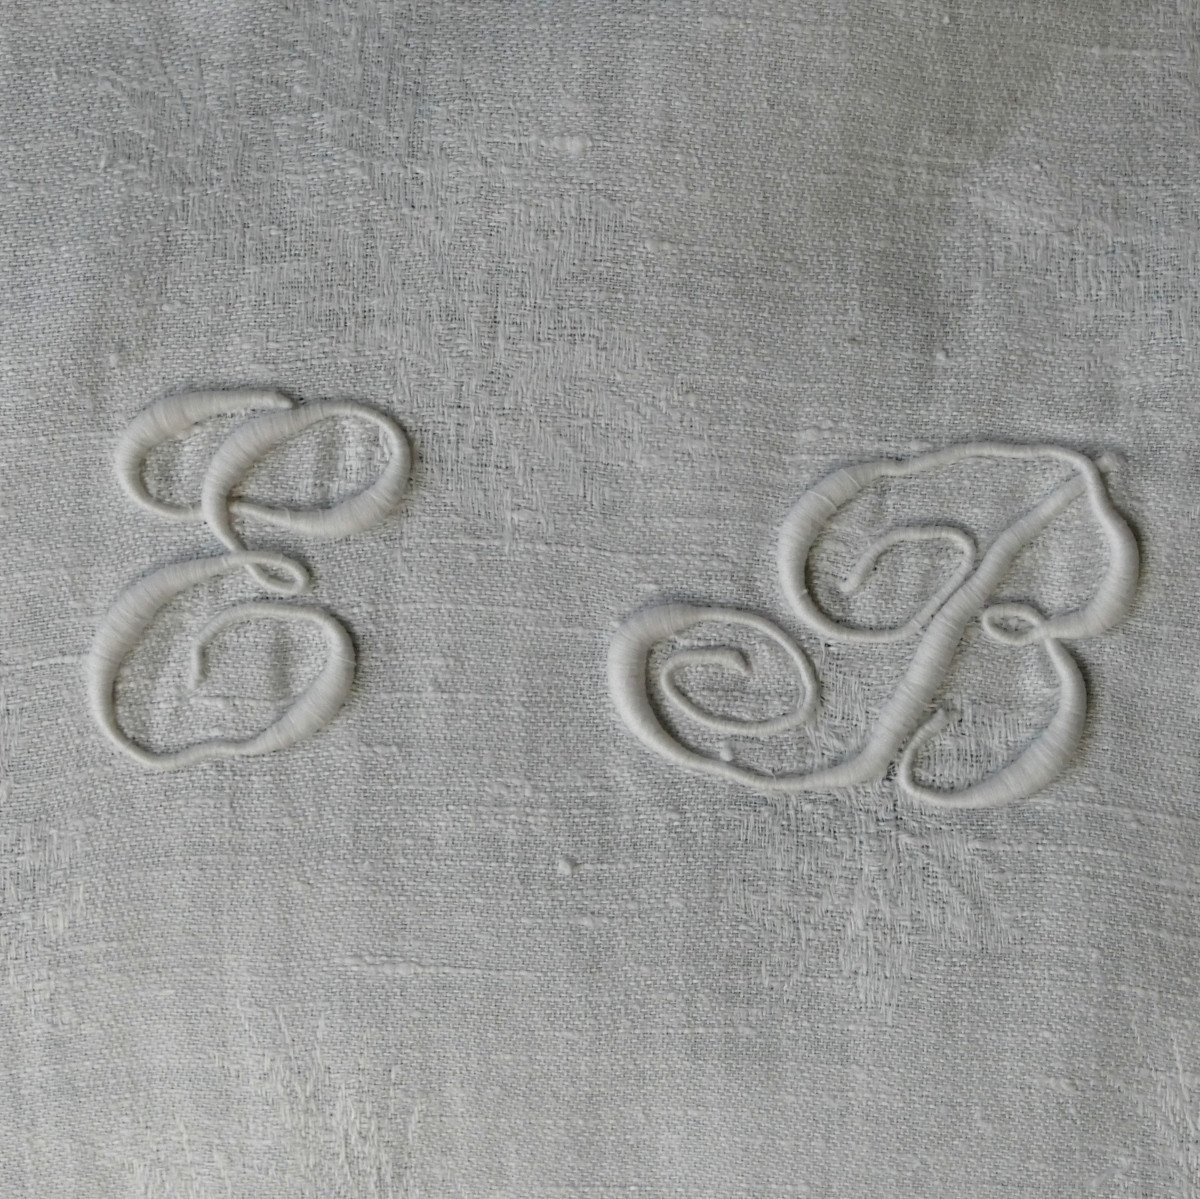 Double Monogram Damask Tablecloth “eb”, Art Nouveau.